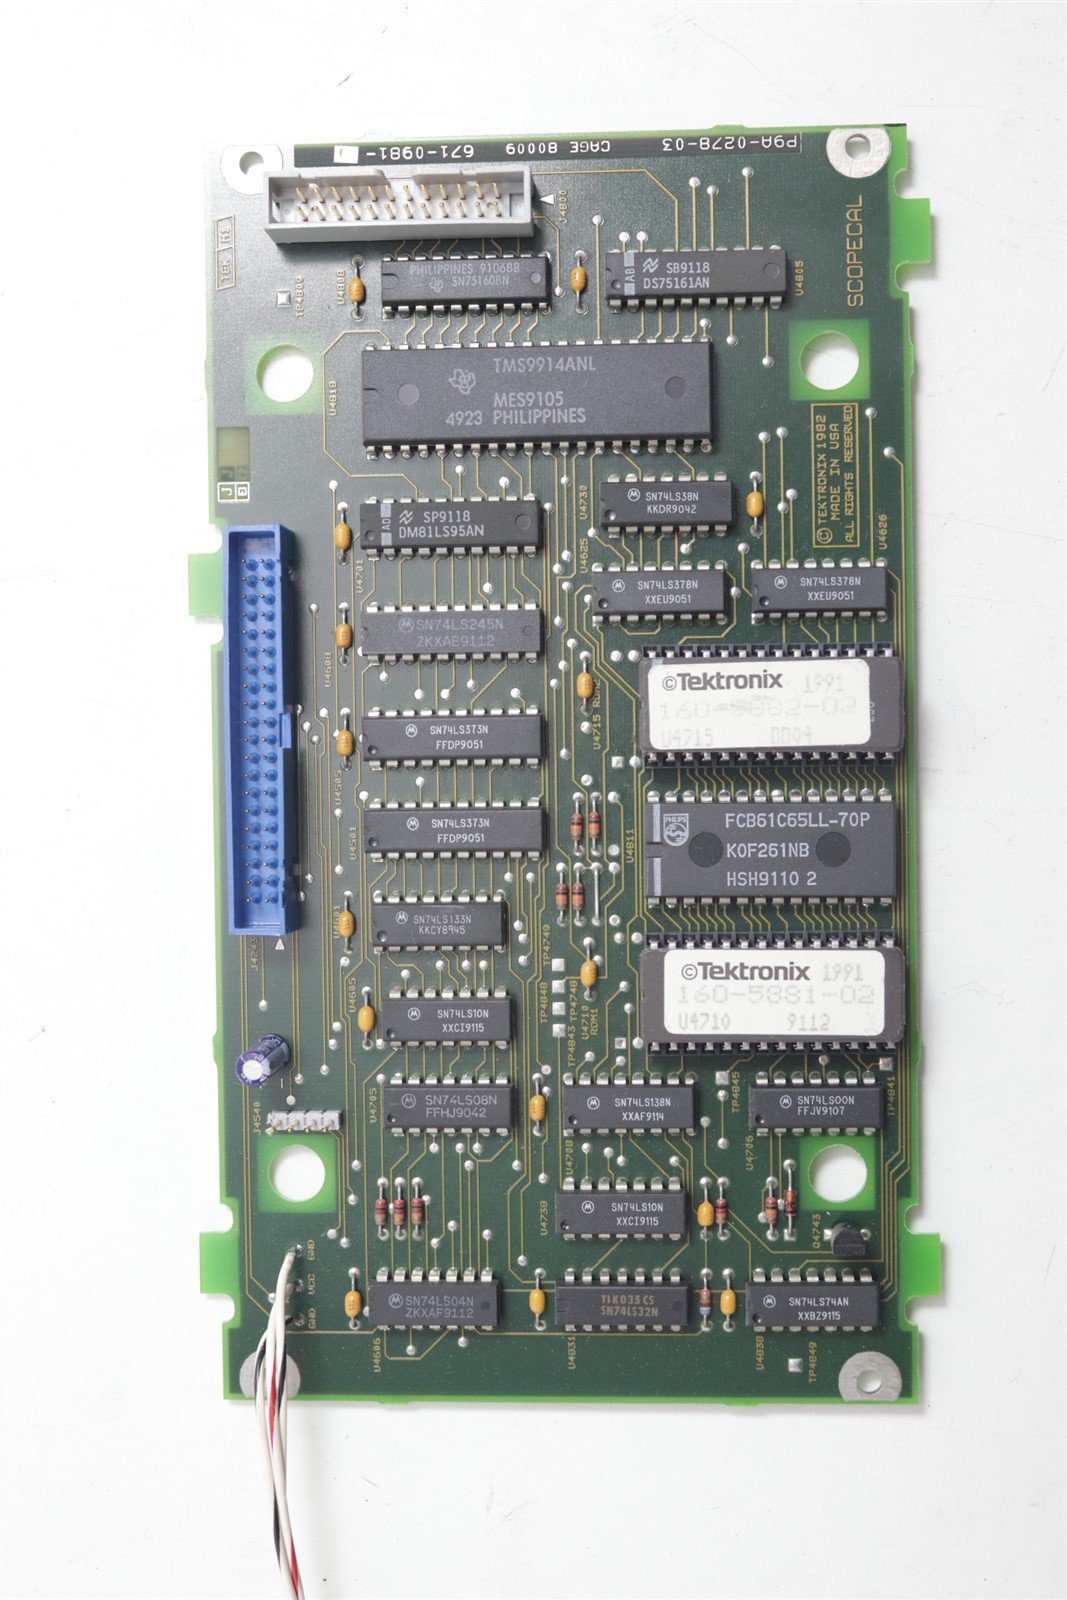 Tektronix 2465BDM Oscilloscop 671-0981-00 /P9C-D277-01 GPIB Option Kits